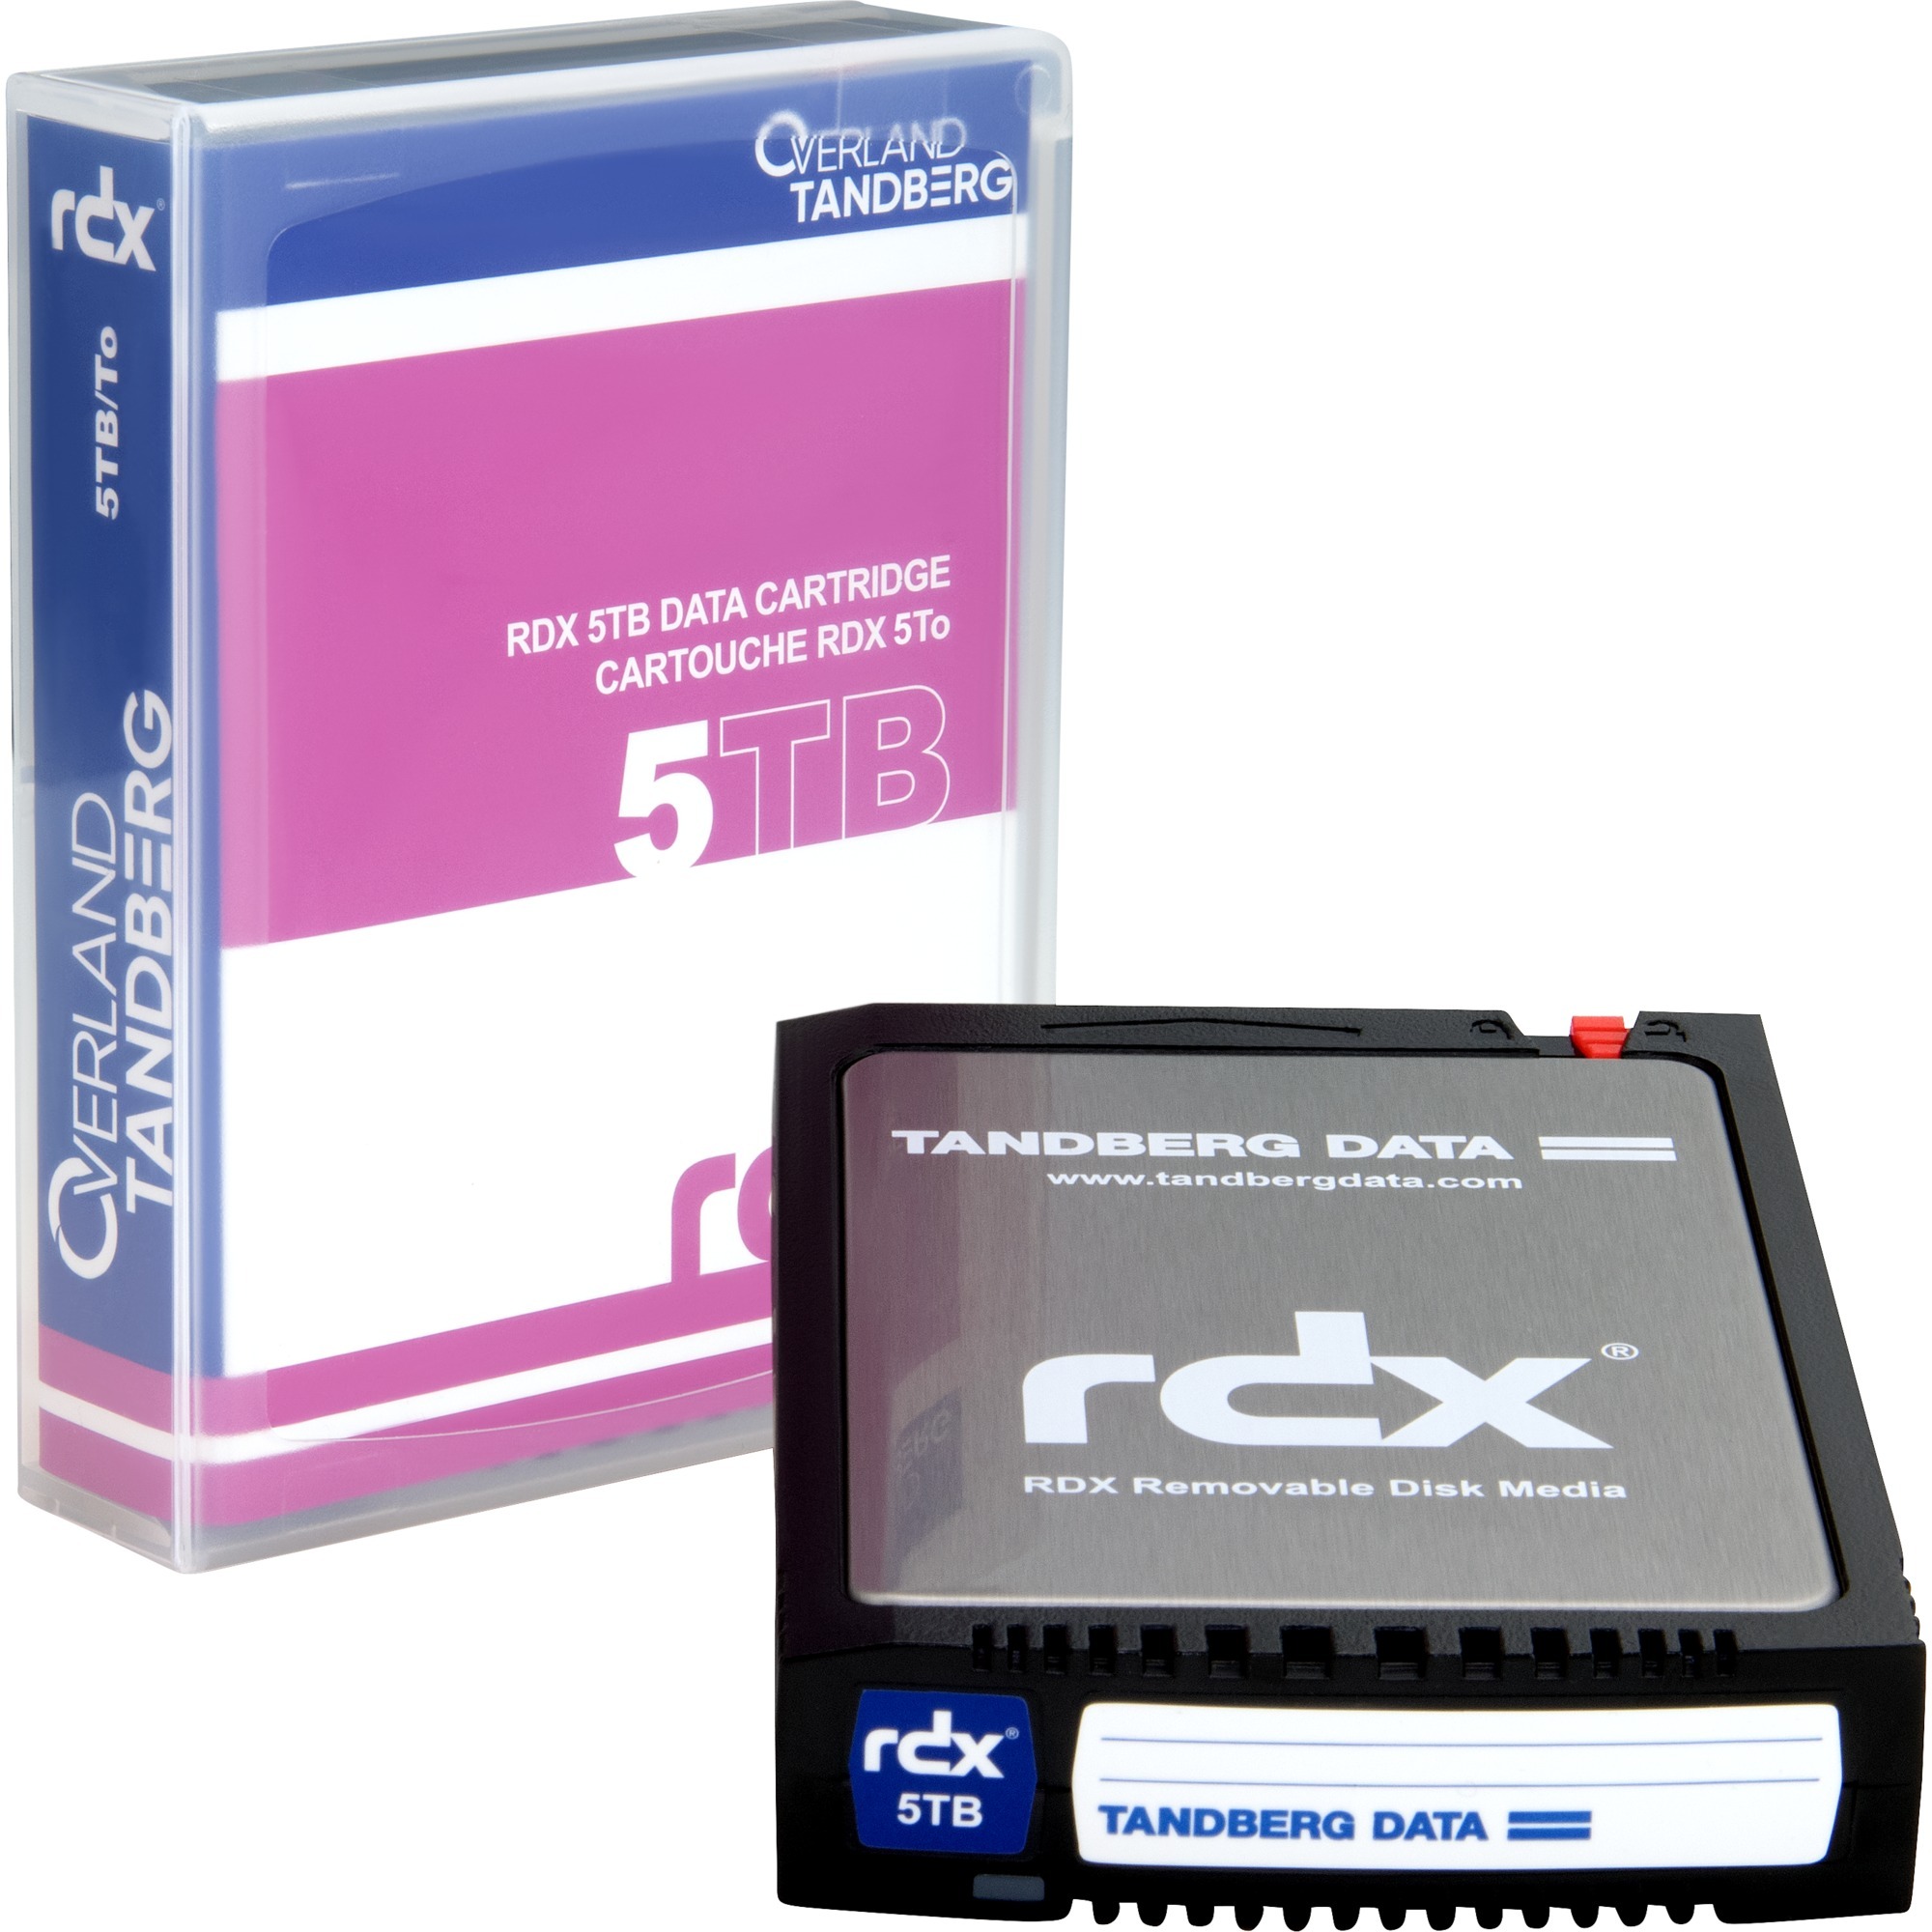 Image of Alternate - RDX Cartridge 5 TB, Wechselplatten-Medium online einkaufen bei Alternate